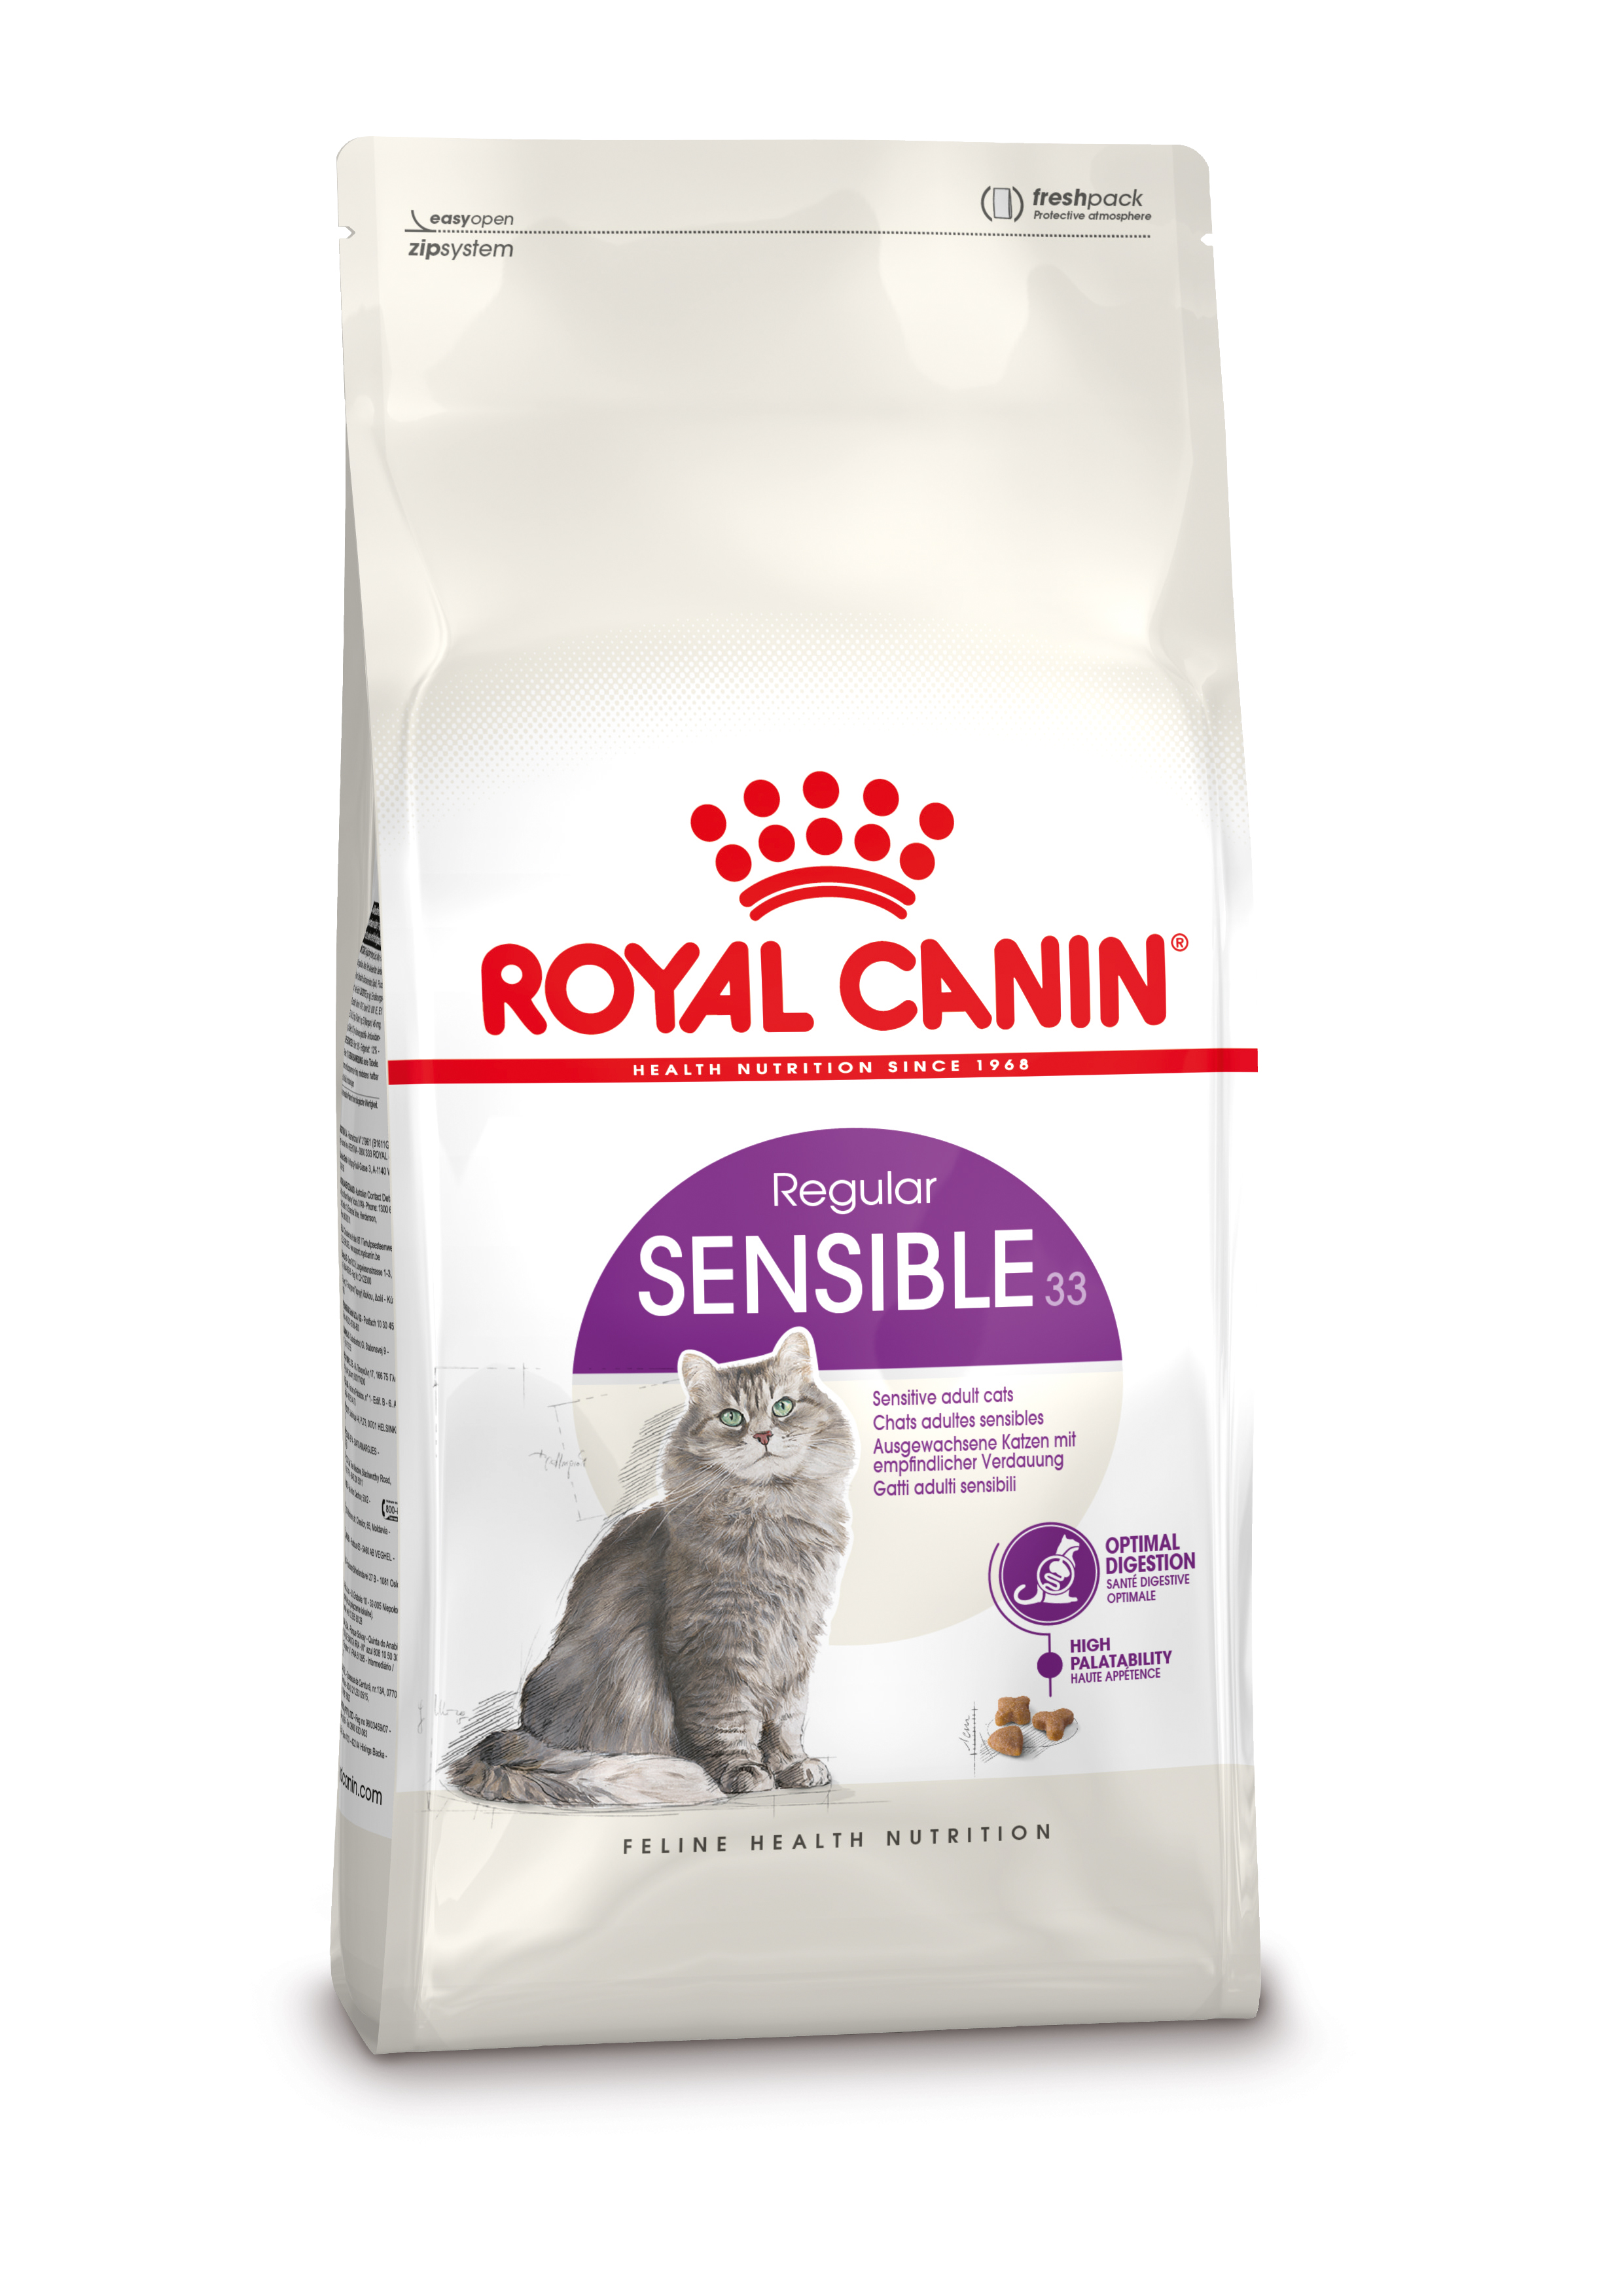 Afbeelding Royal Canin Sensible 33 kattenvoer 2 kg door Brekz.nl